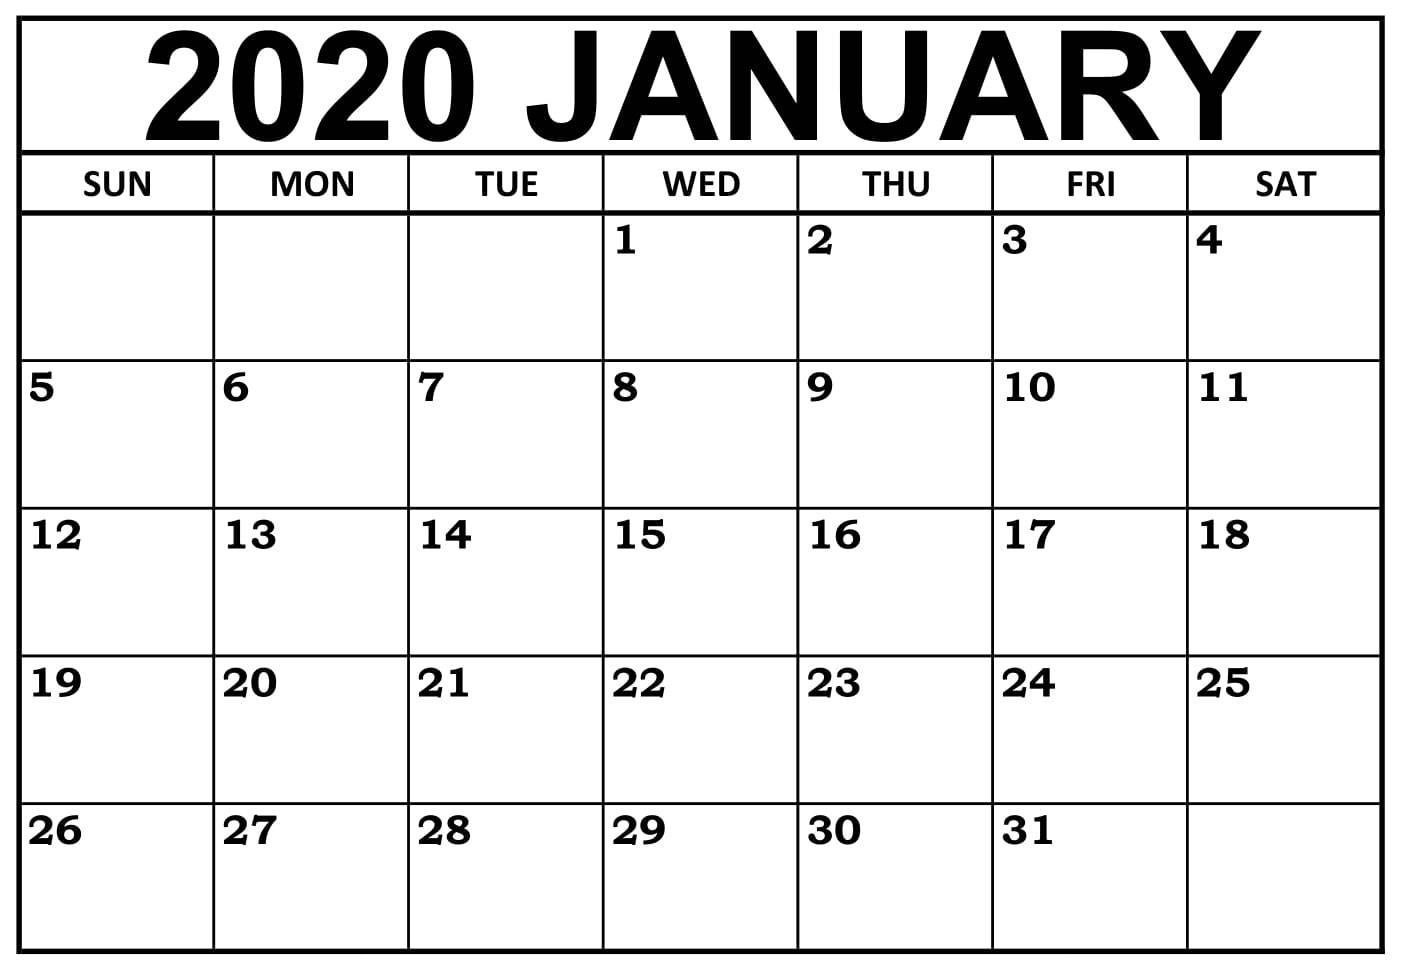 January 2020 Calendar Nz (New Zealand) - 2019 Calendars For